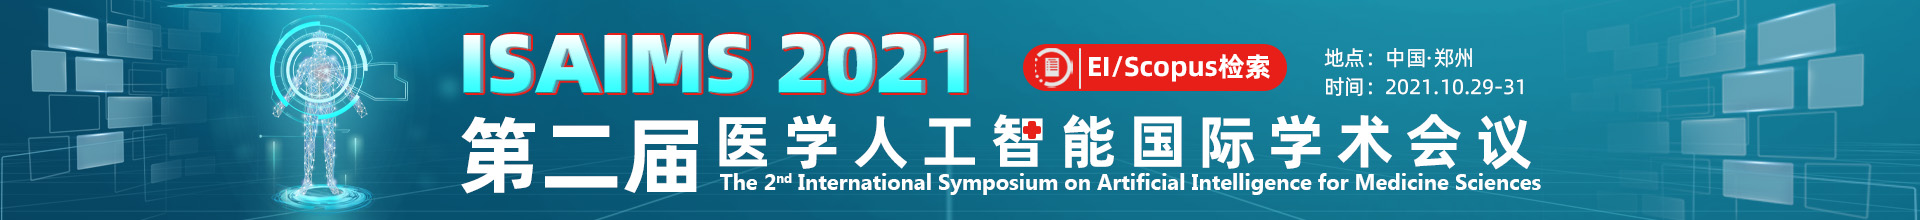 8月北京-ISAIMS2021-学术会议云-何霞丽-20210423.jpg